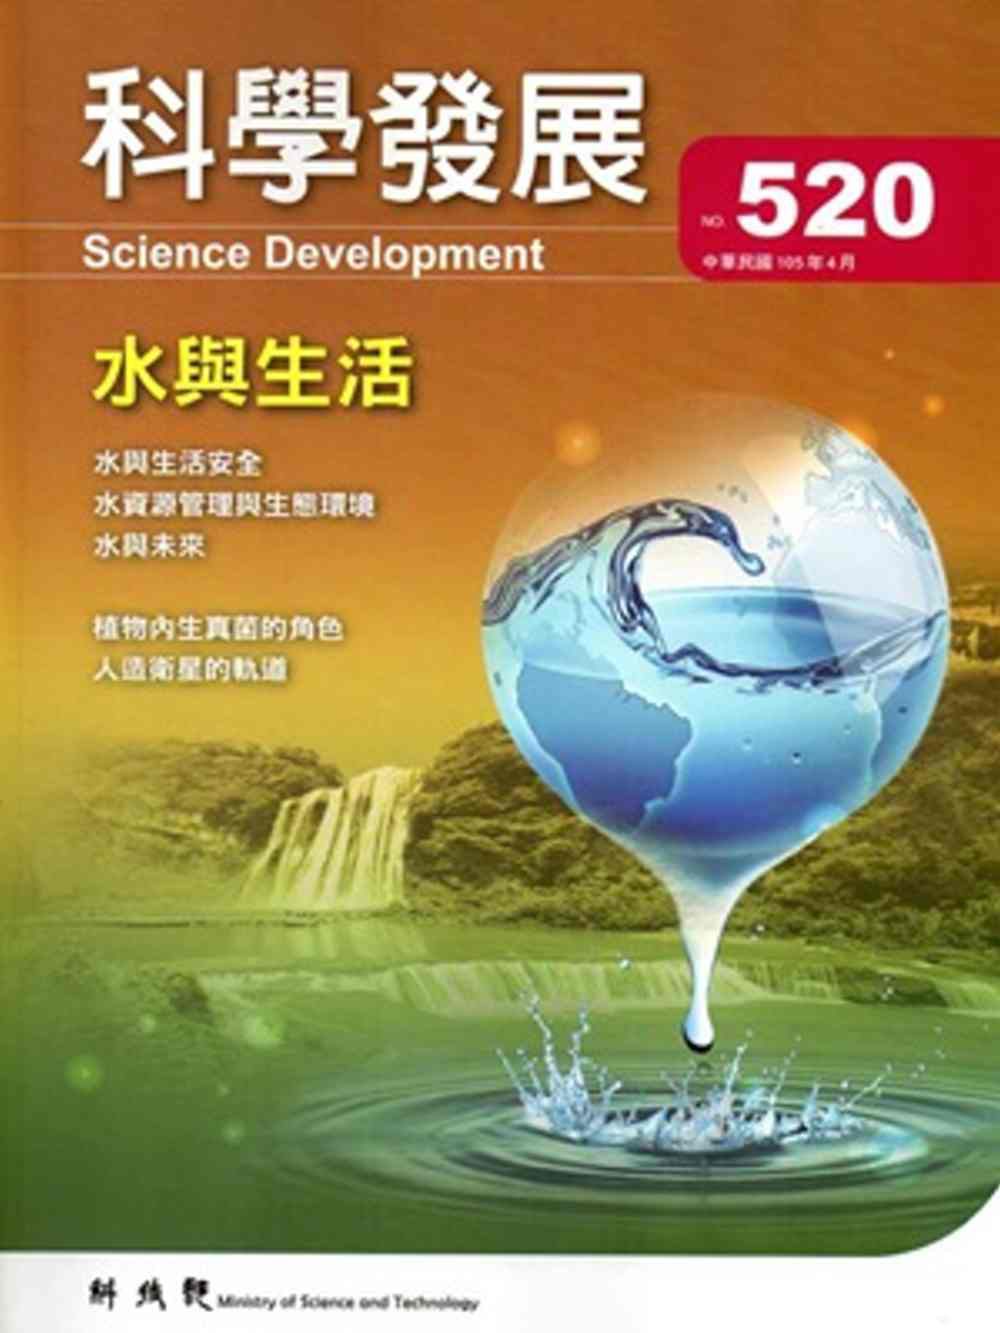 科學發展月刊第520期(105/04)